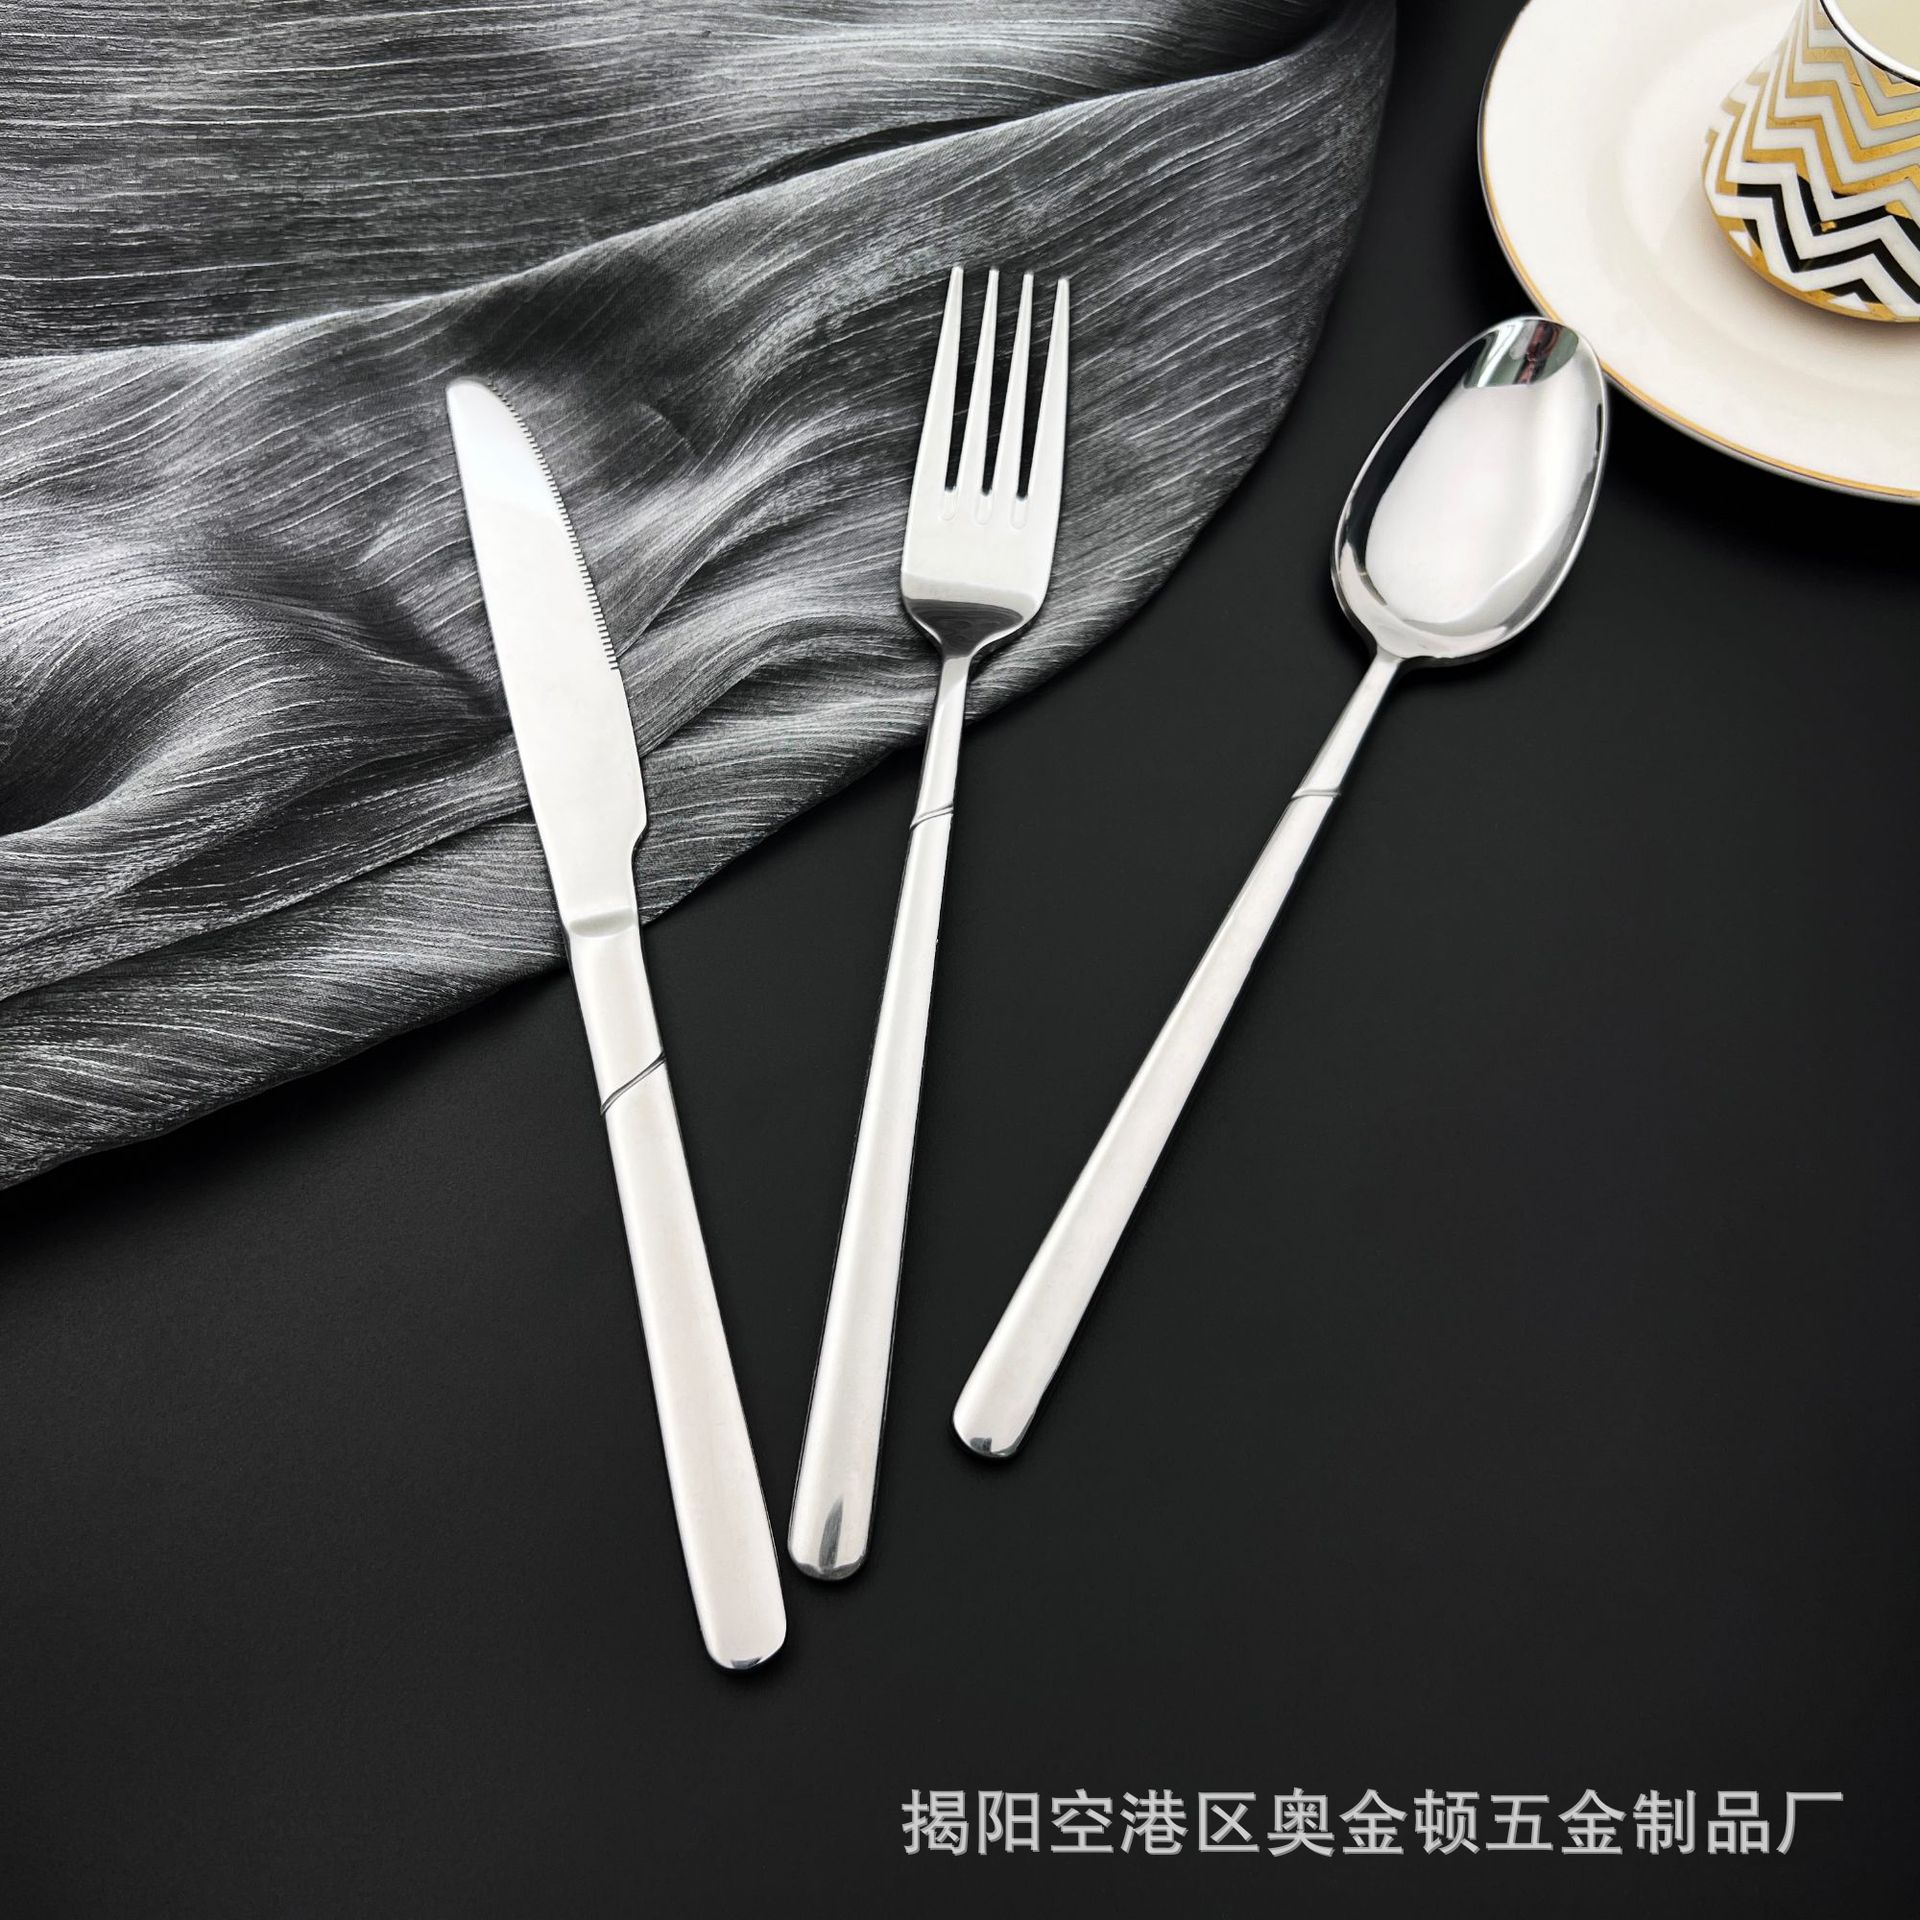 高档牛排刀叉勺 不锈钢酒店西餐创意全套西餐餐具